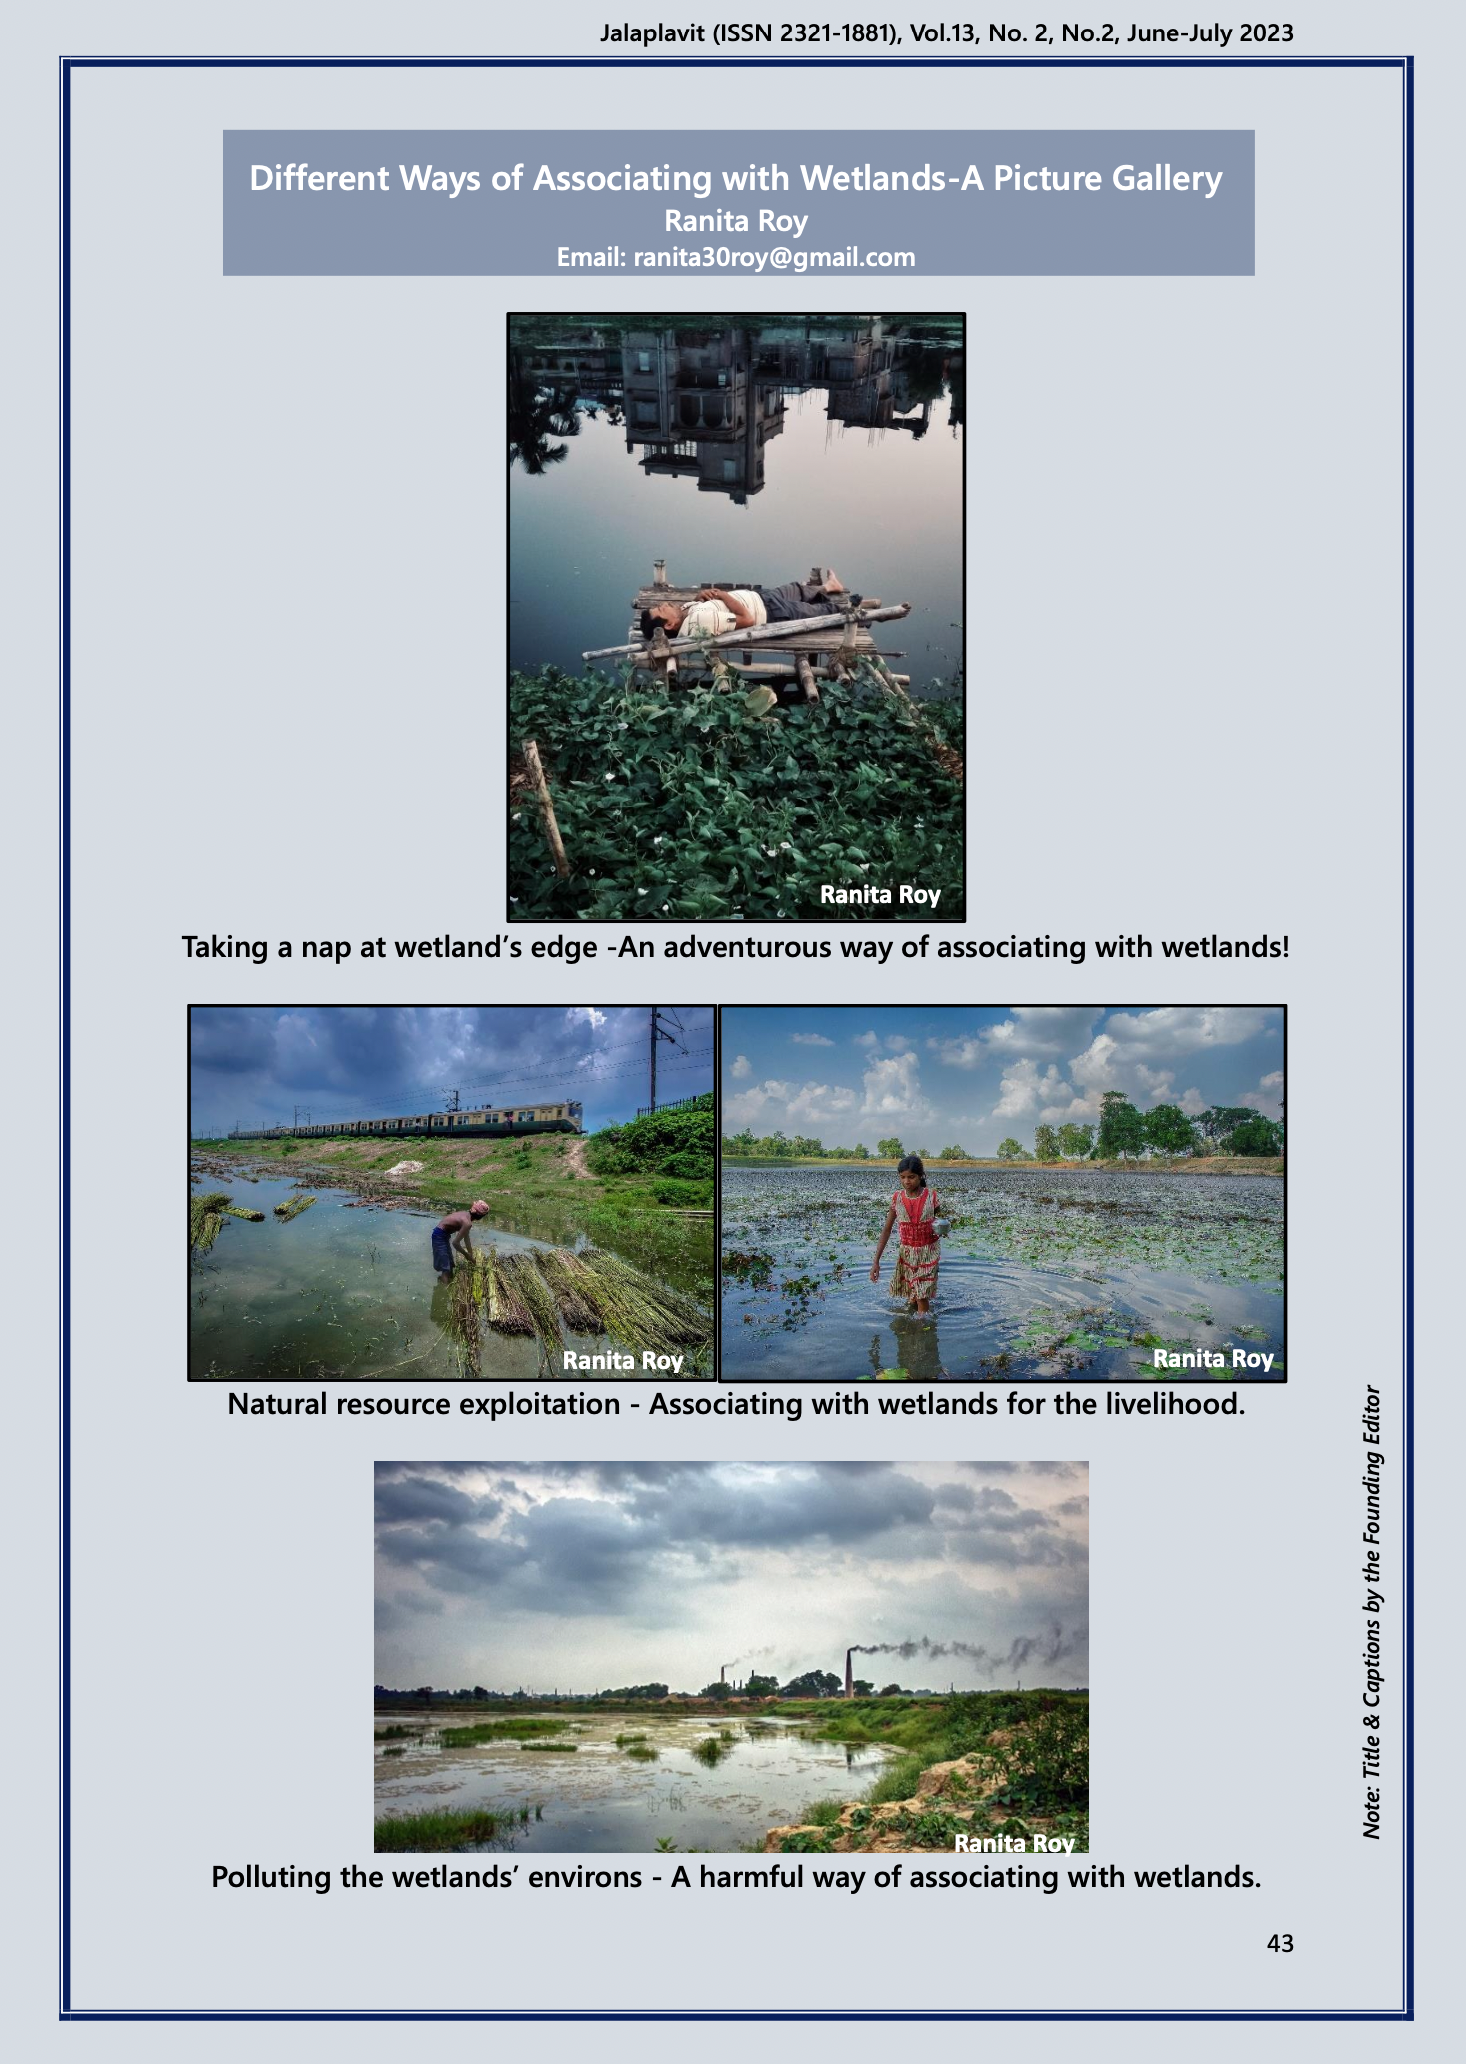 Published on Jalaplavit (ISSN 2321-1881) on Wetland. 